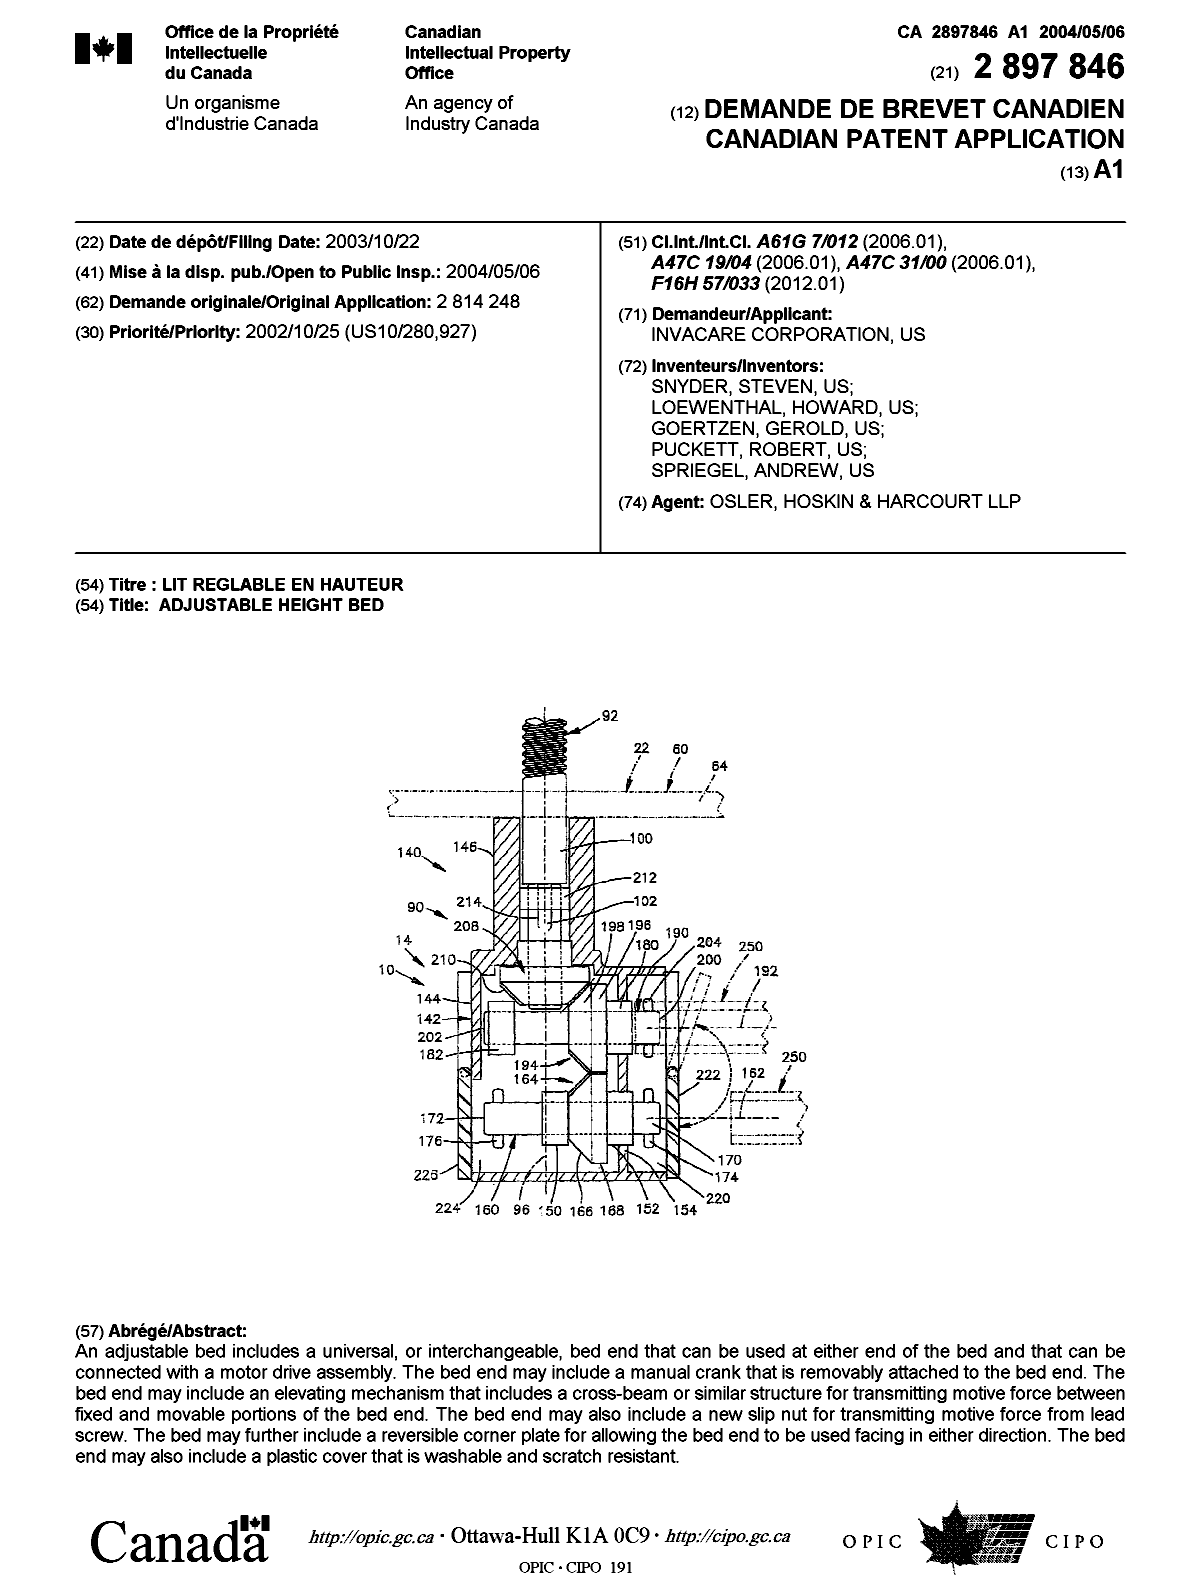 Document de brevet canadien 2897846. Page couverture 20150803. Image 1 de 1